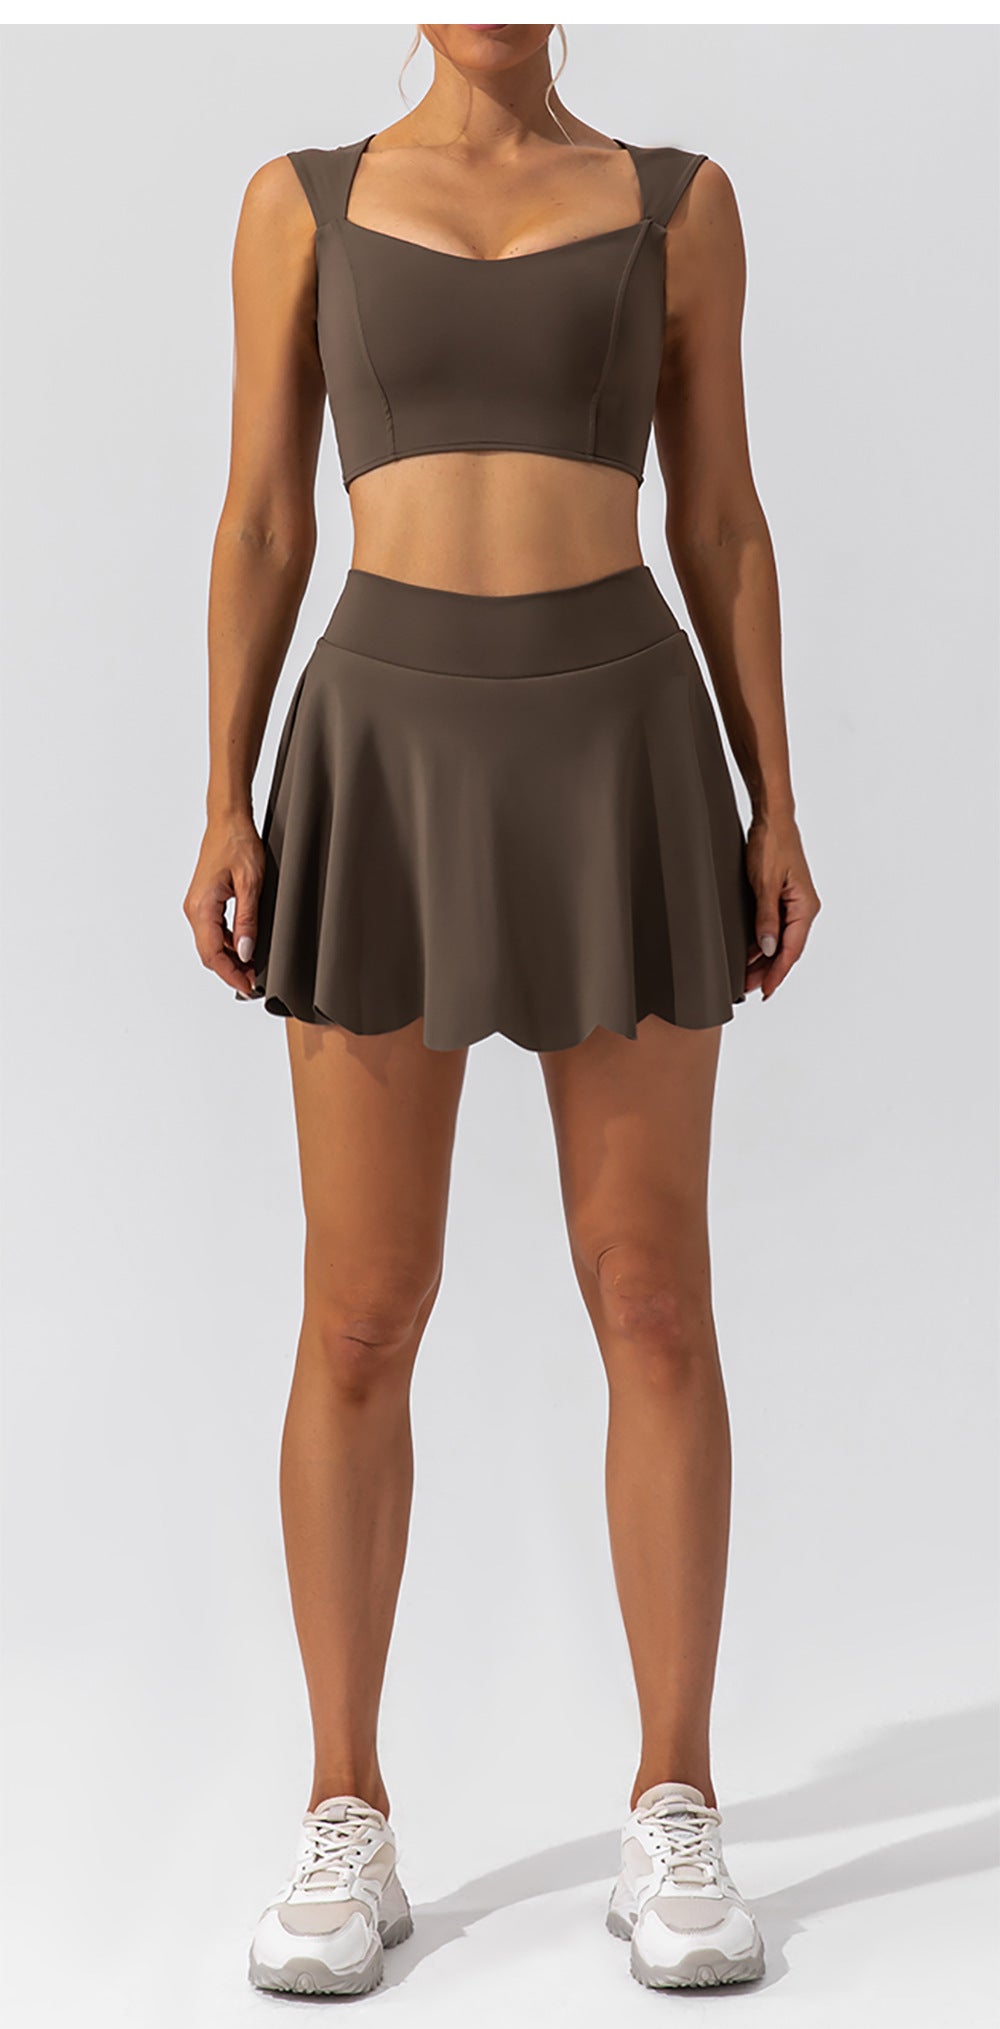 slim yoga skirt mini skirt pants running fitness tennis anti-light sports skirt